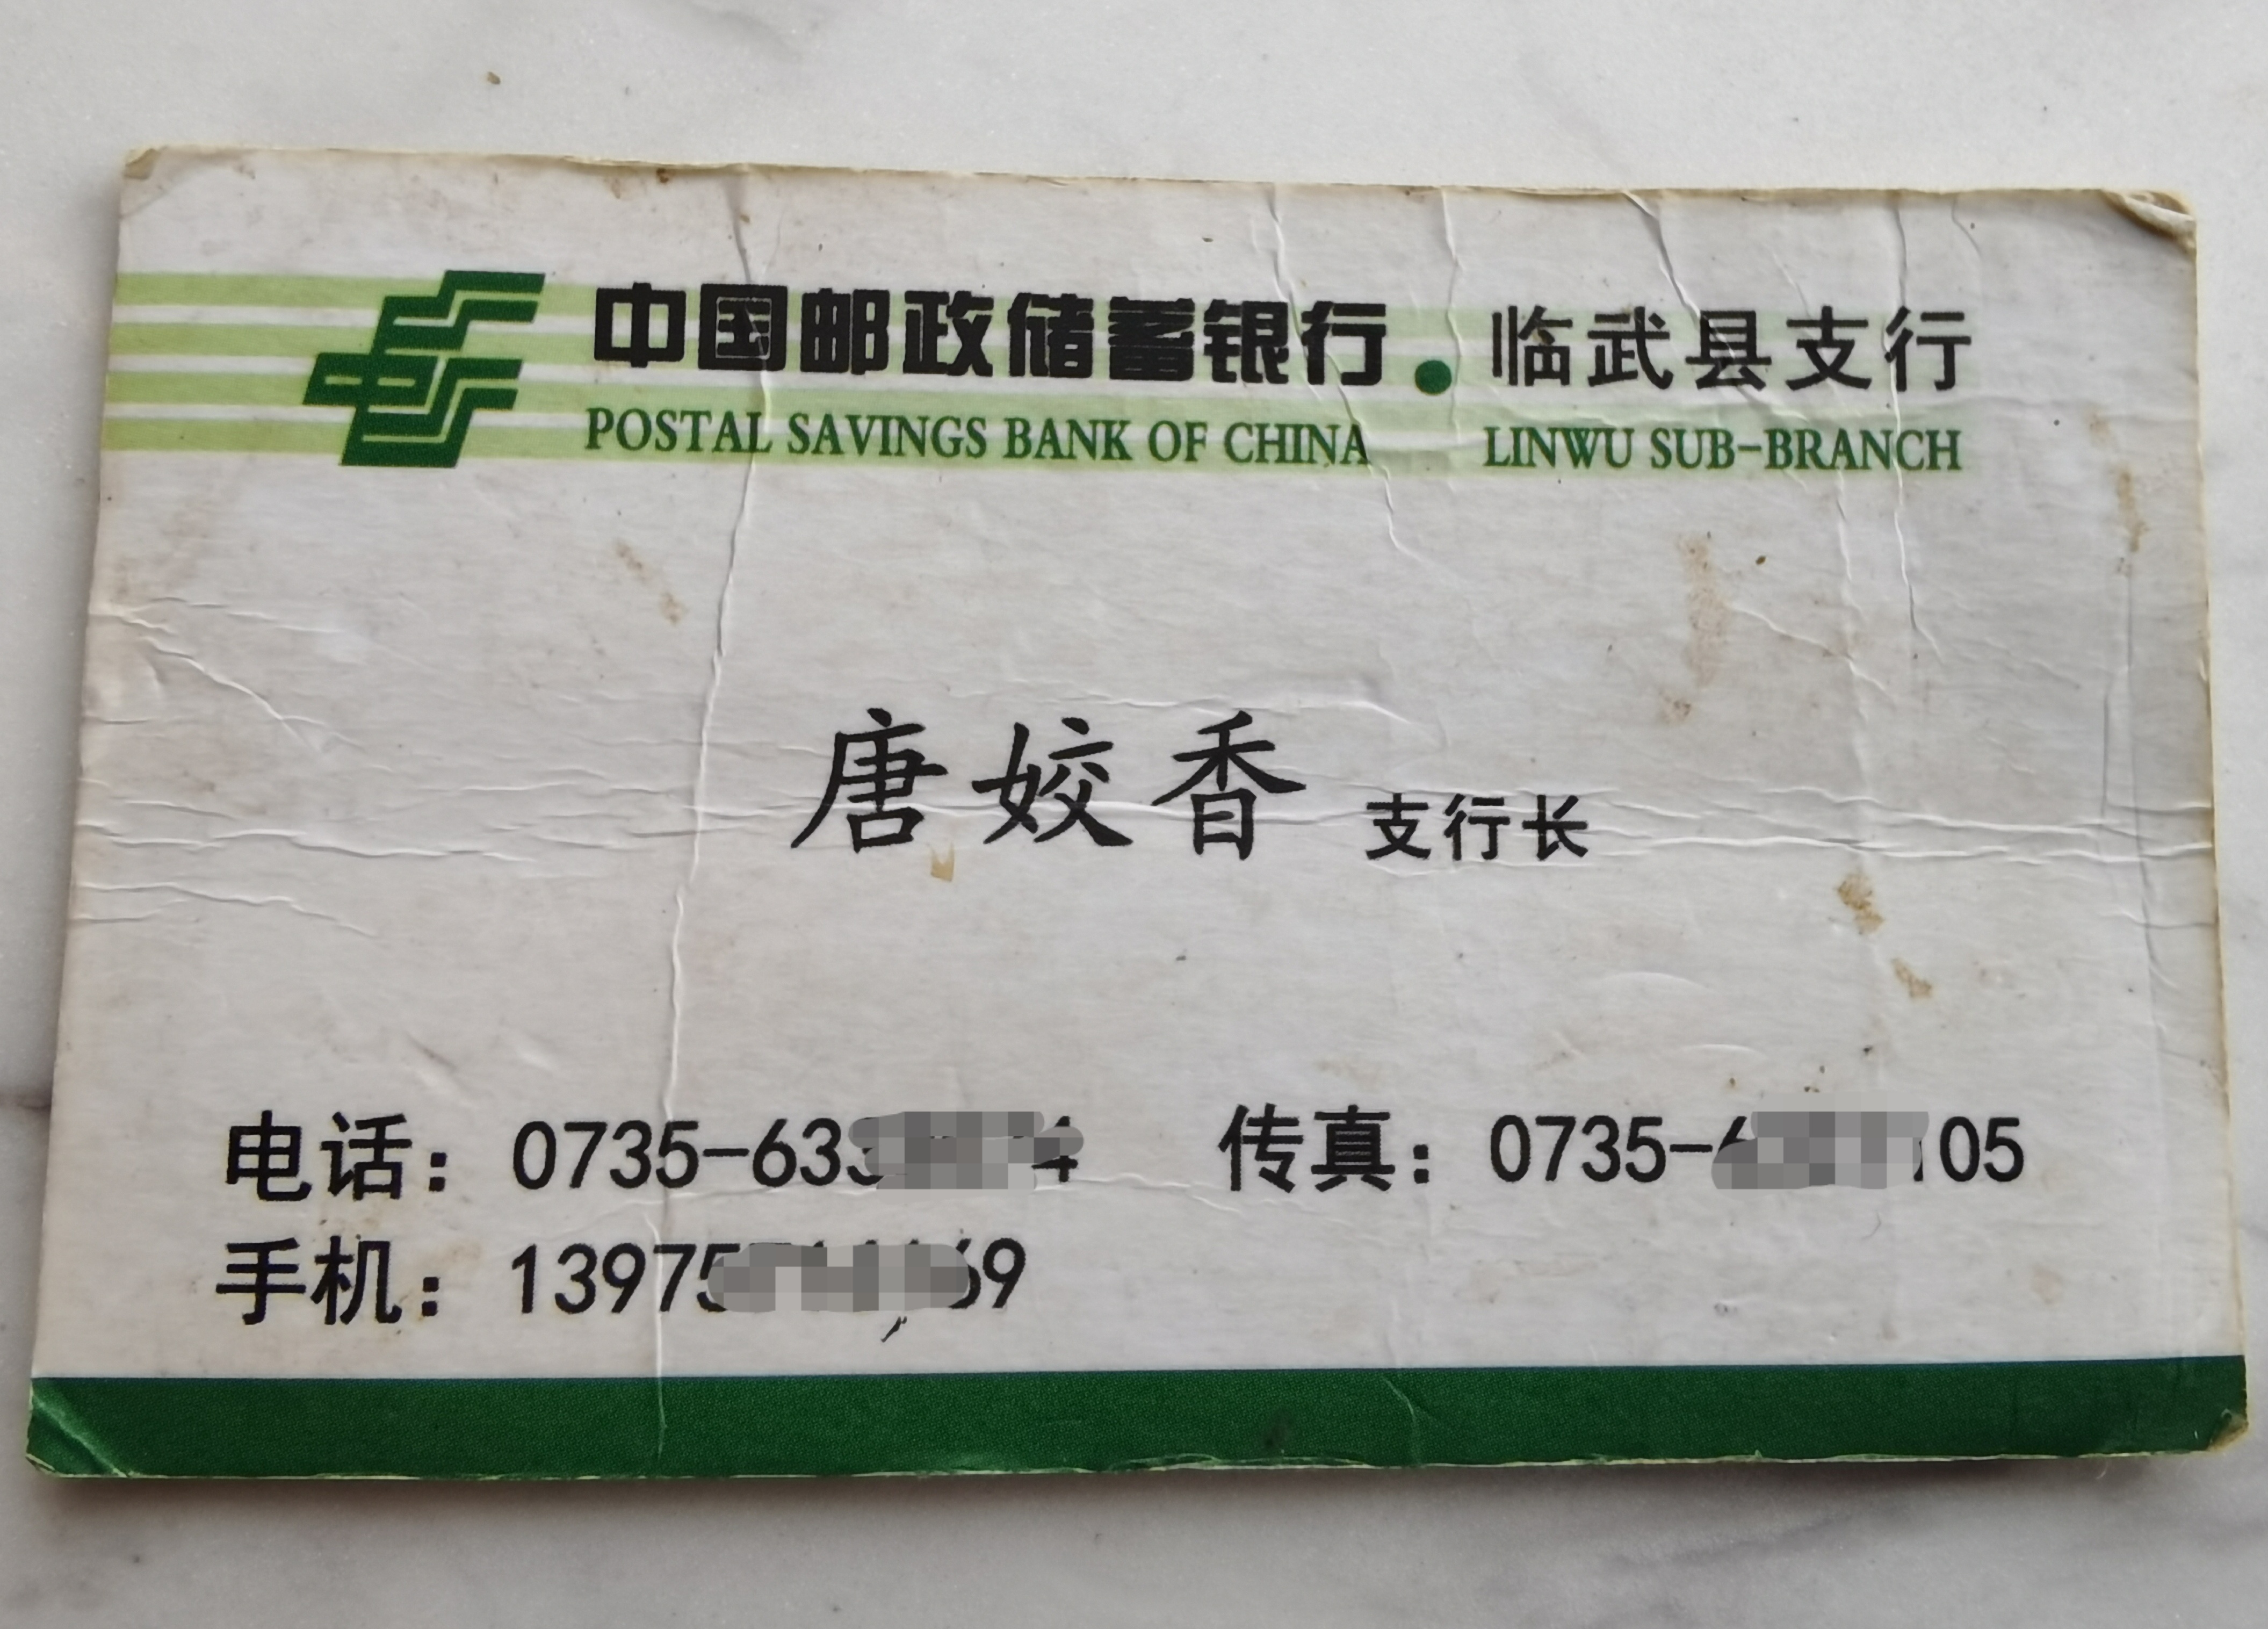 这张名片已有些发皱泛黄,上面显示,唐姣香的职务为邮储银行临武县支行